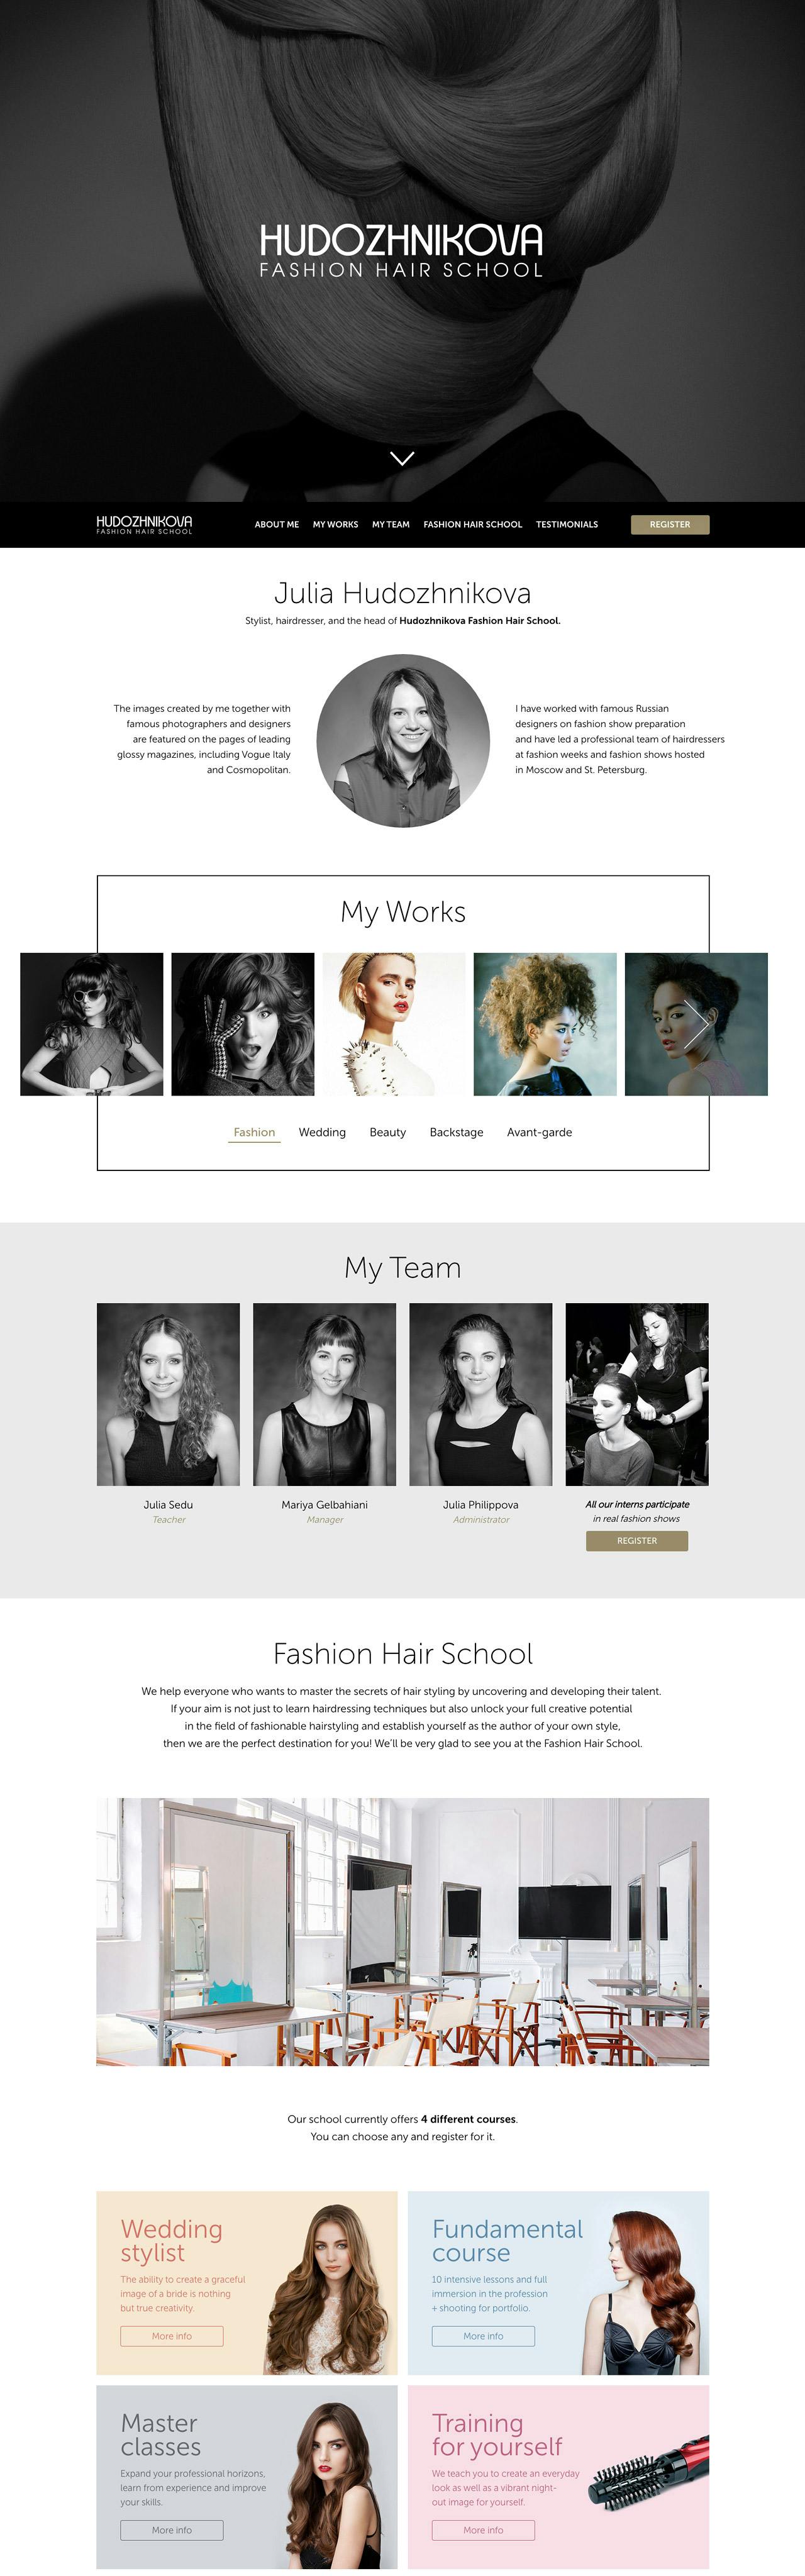 Hudozhnikova Fashion Hair School - One Page Website Award